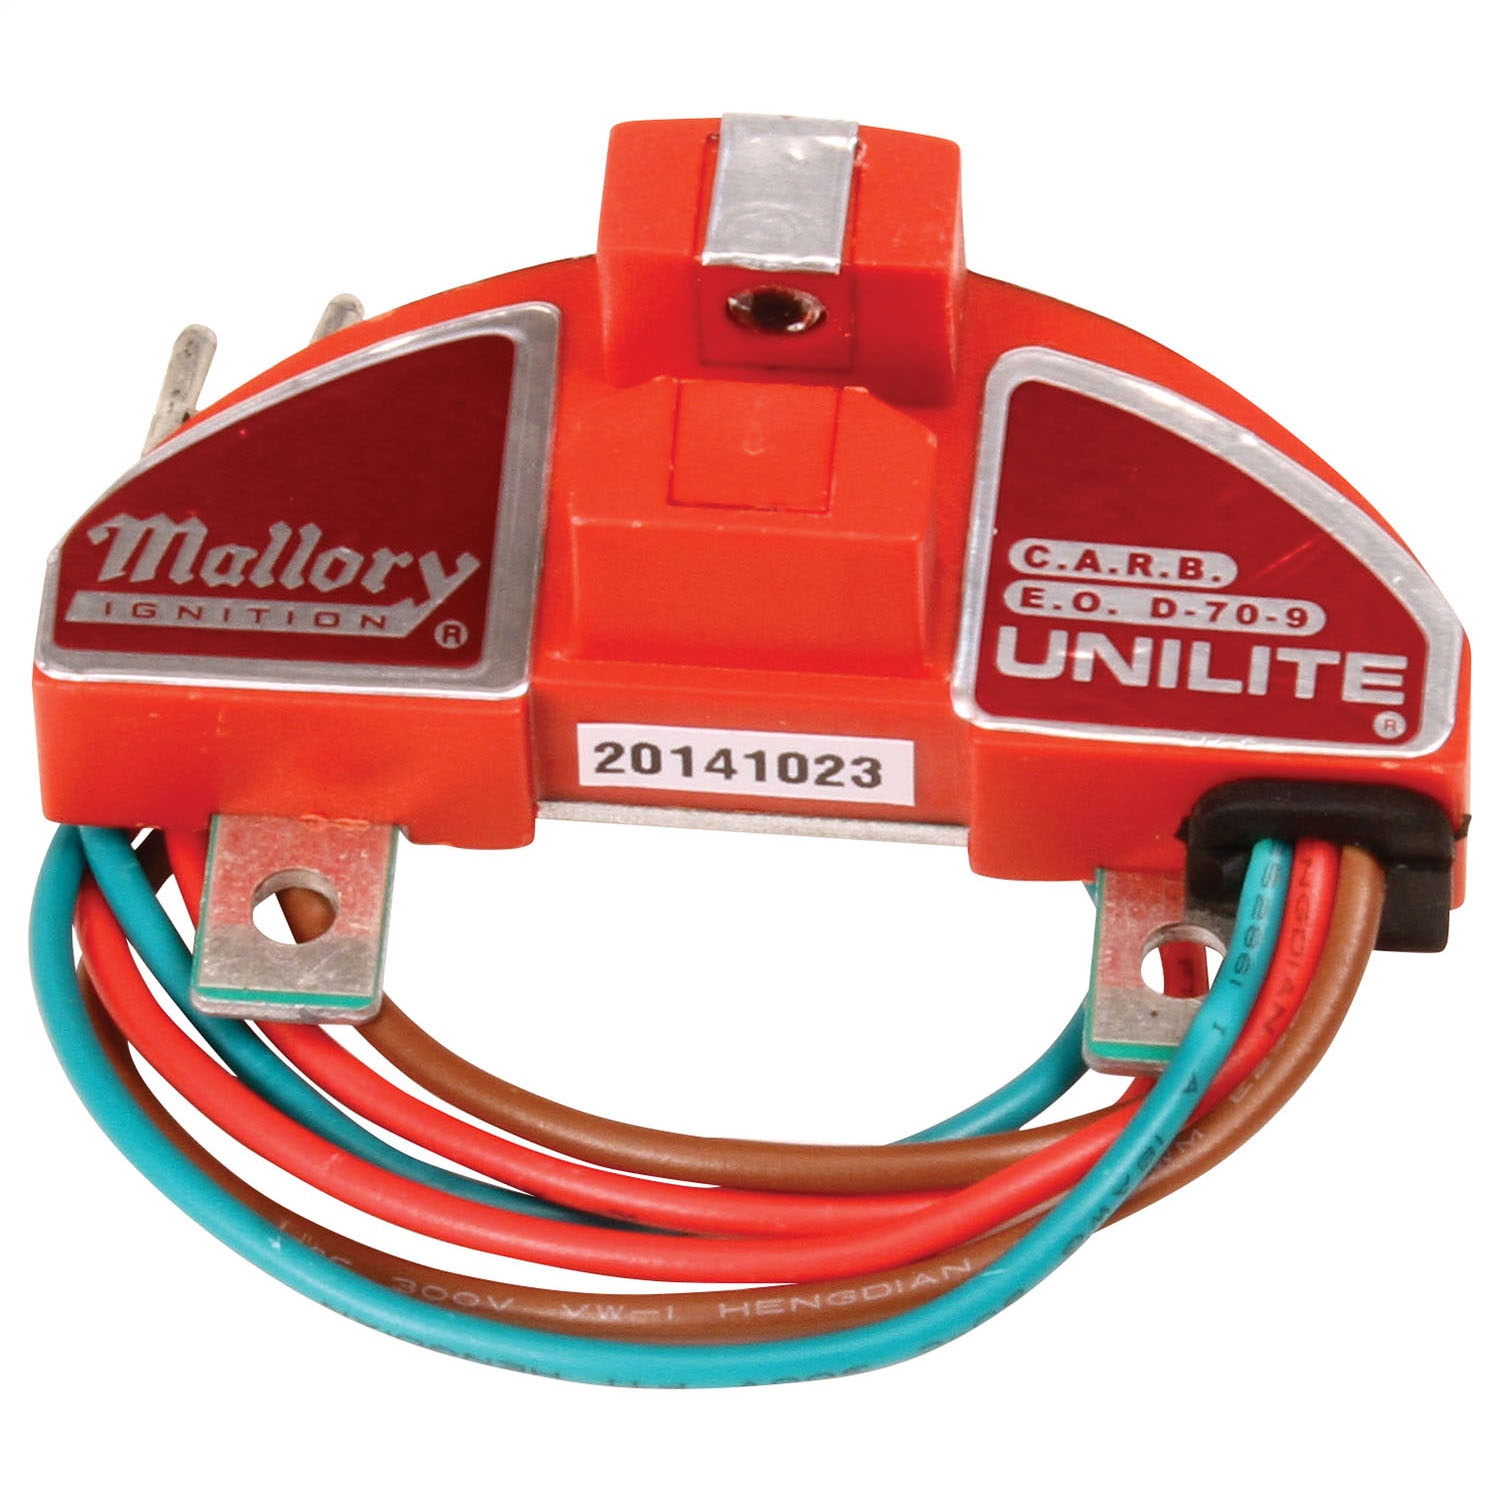 605 Mallory Mallory Module, Unilite, Thermaclad